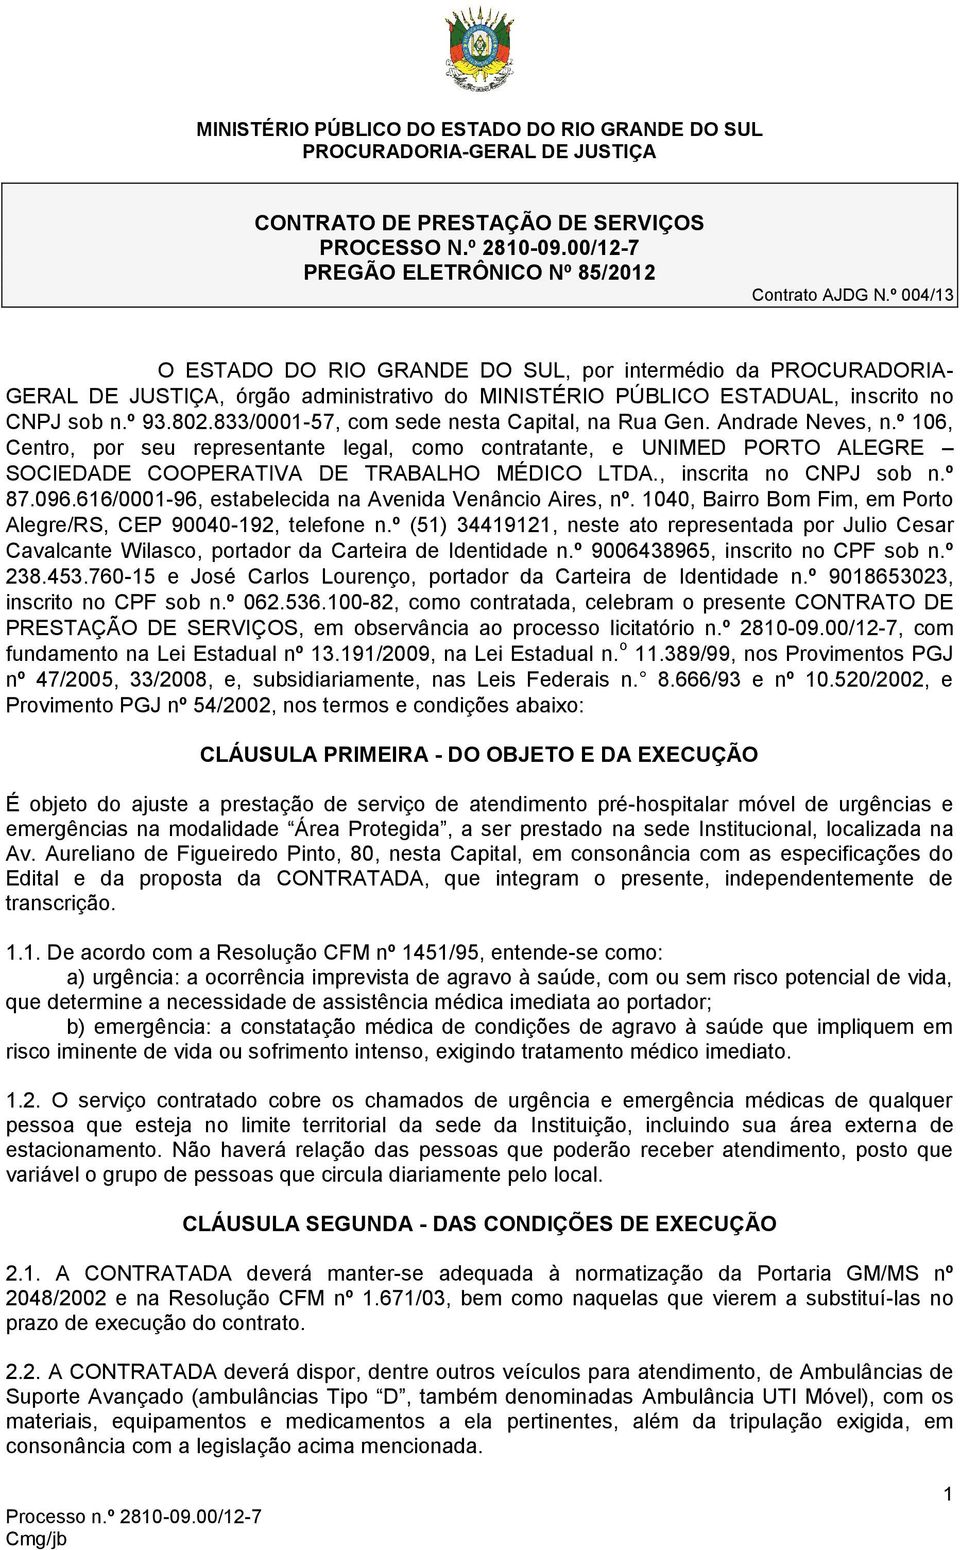 833/0001-57, com sede nesta Capital, na Rua Gen. Andrade Neves, n.º 106, Centro, por seu representante legal, como contratante, e UNIMED PORTO ALEGRE SOCIEDADE COOPERATIVA DE TRABALHO MÉDICO LTDA.